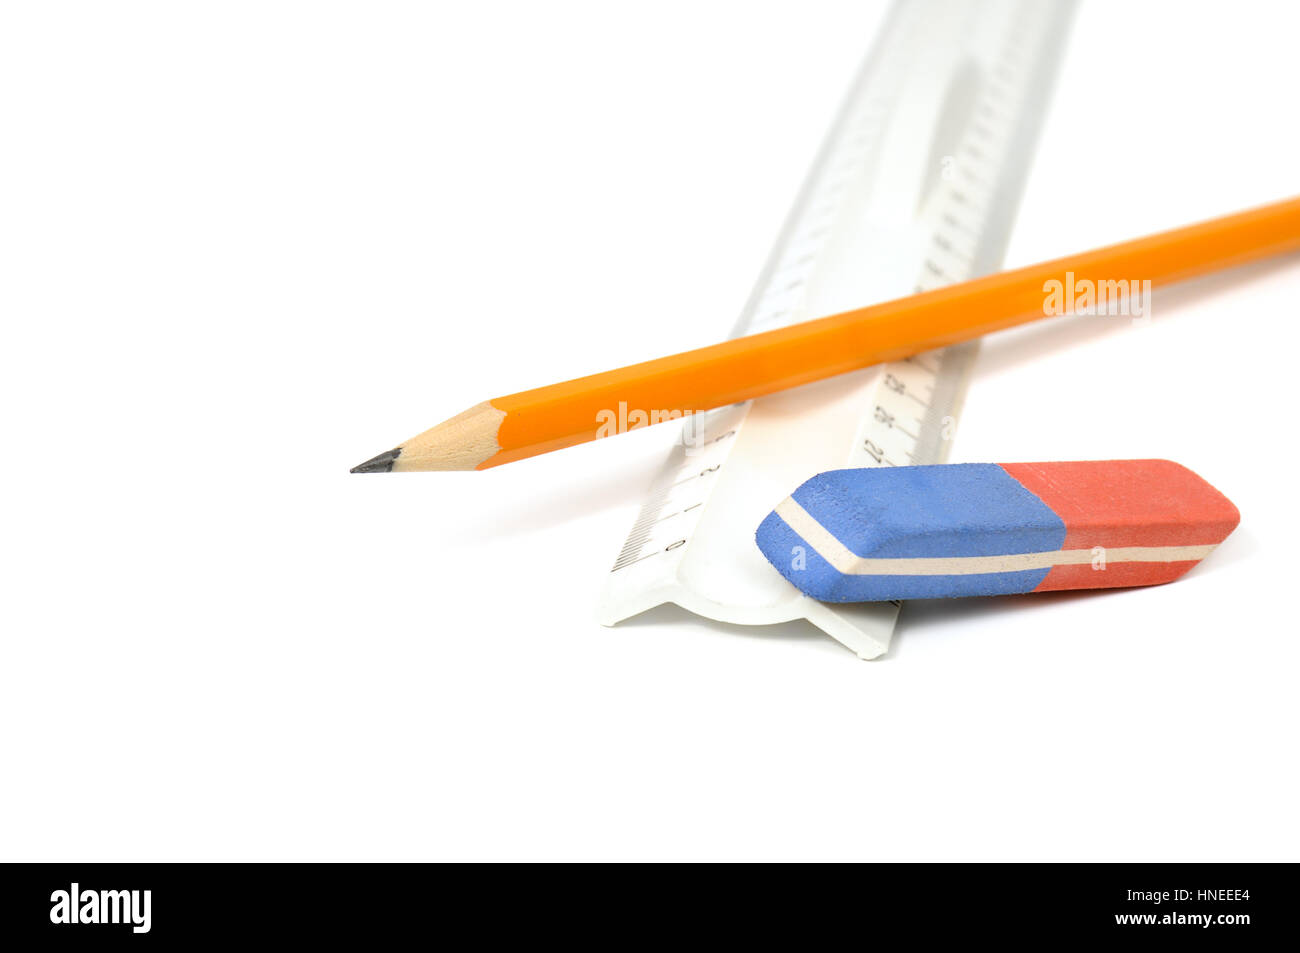 Bleistifte, Radiergummi und Lineal isoliert auf weißem Hintergrund Stockfoto